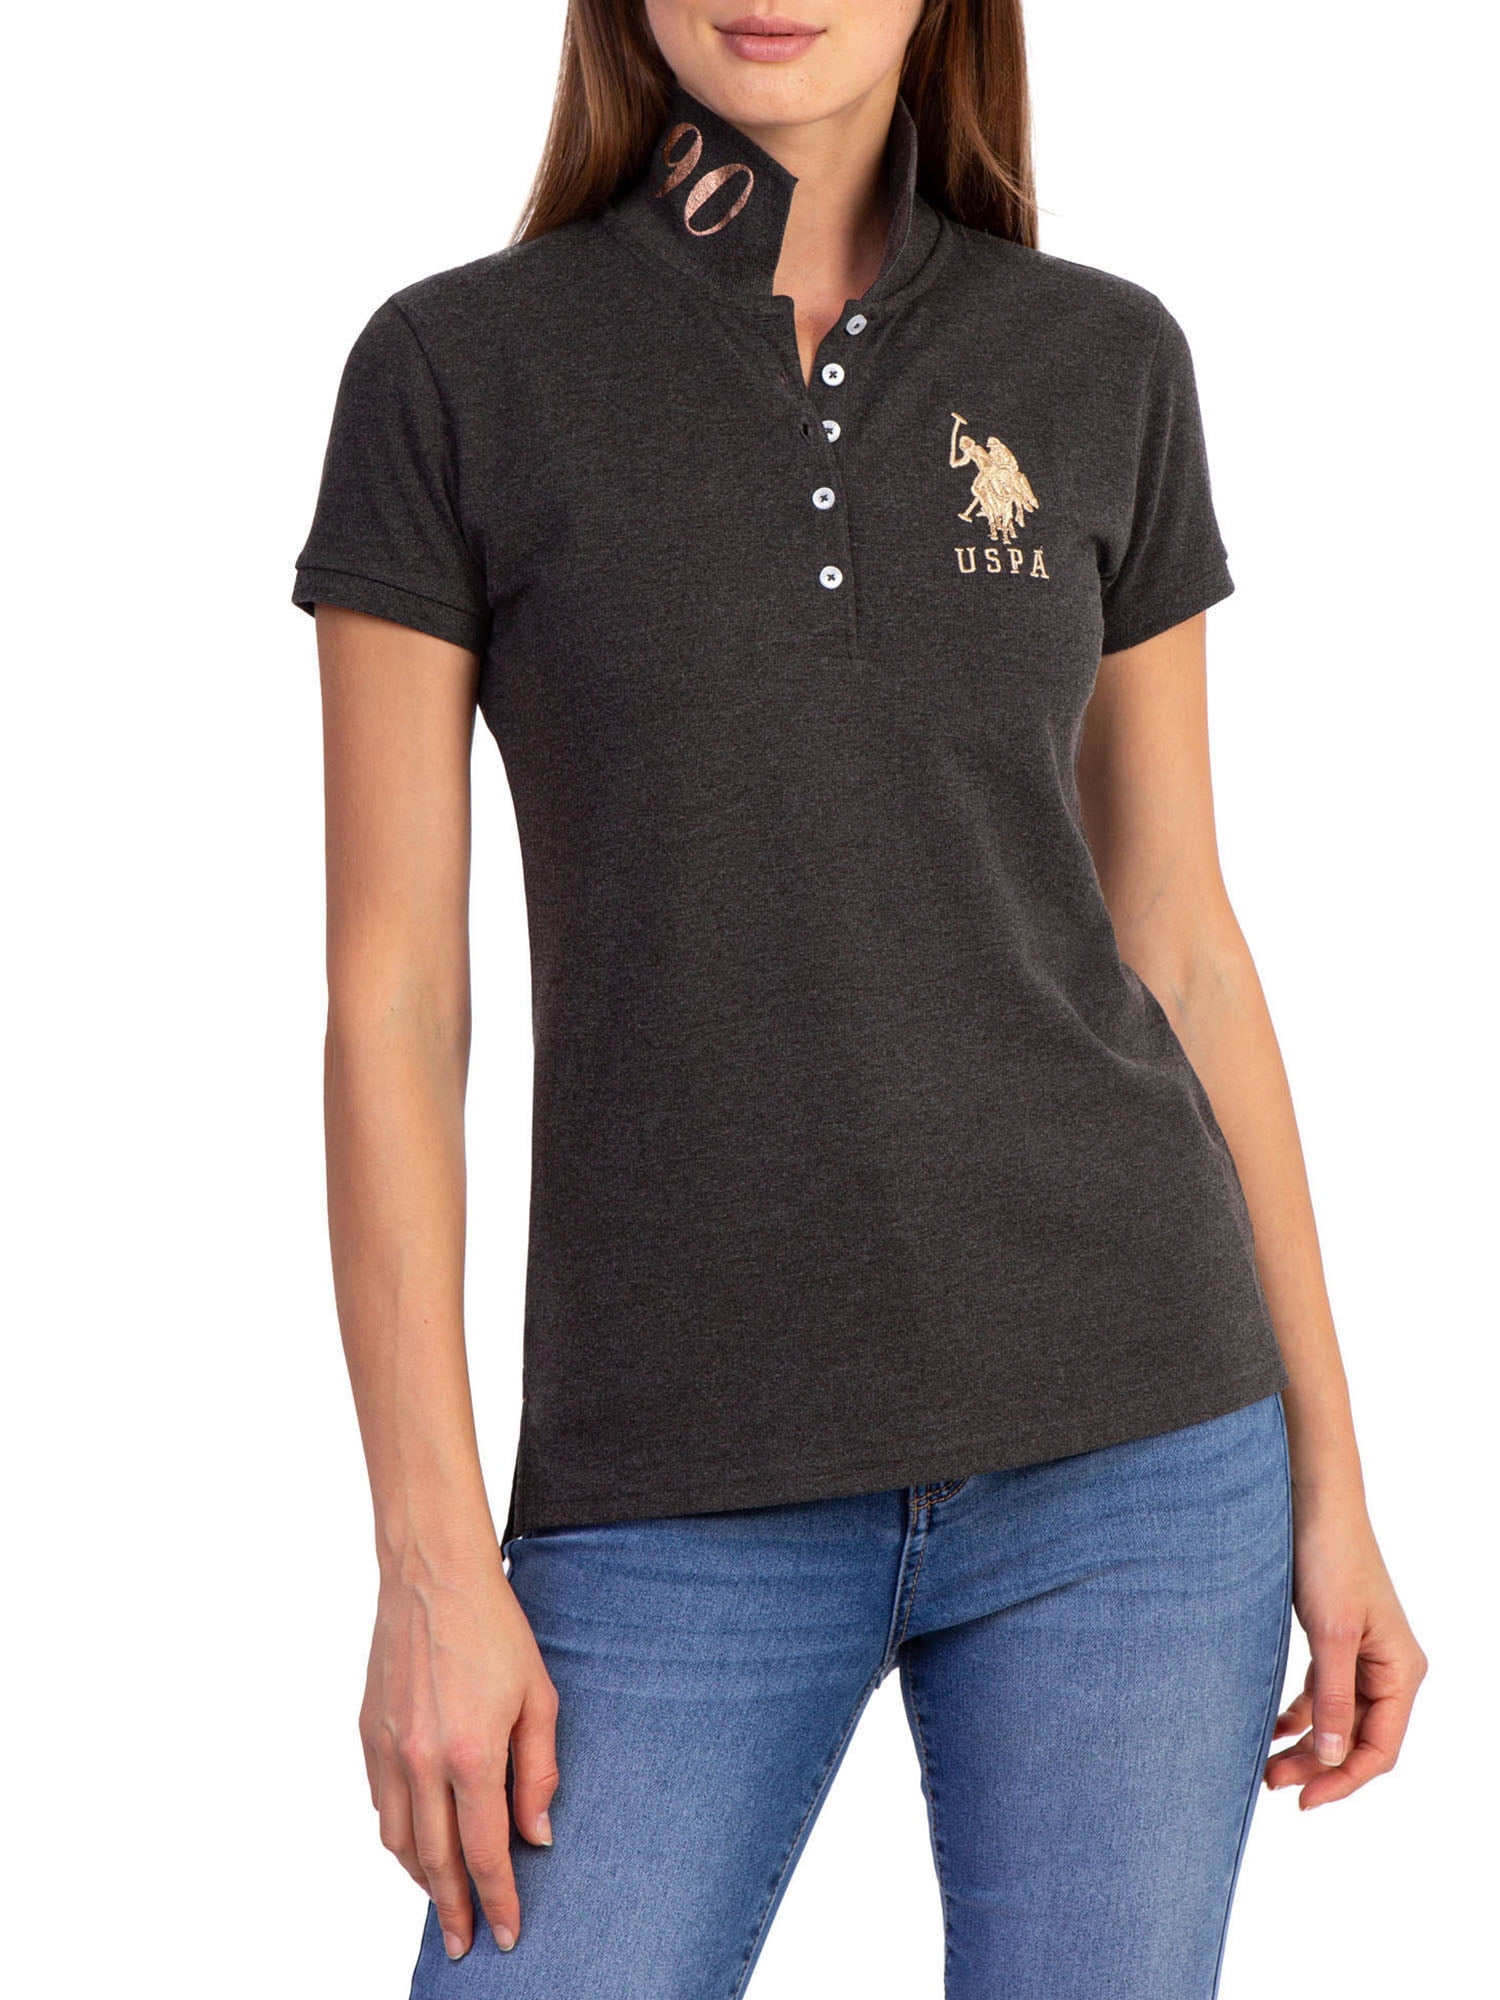 U.S. Polo Assn. Tipped Collar Cotton Polo Shirt, Black (S)